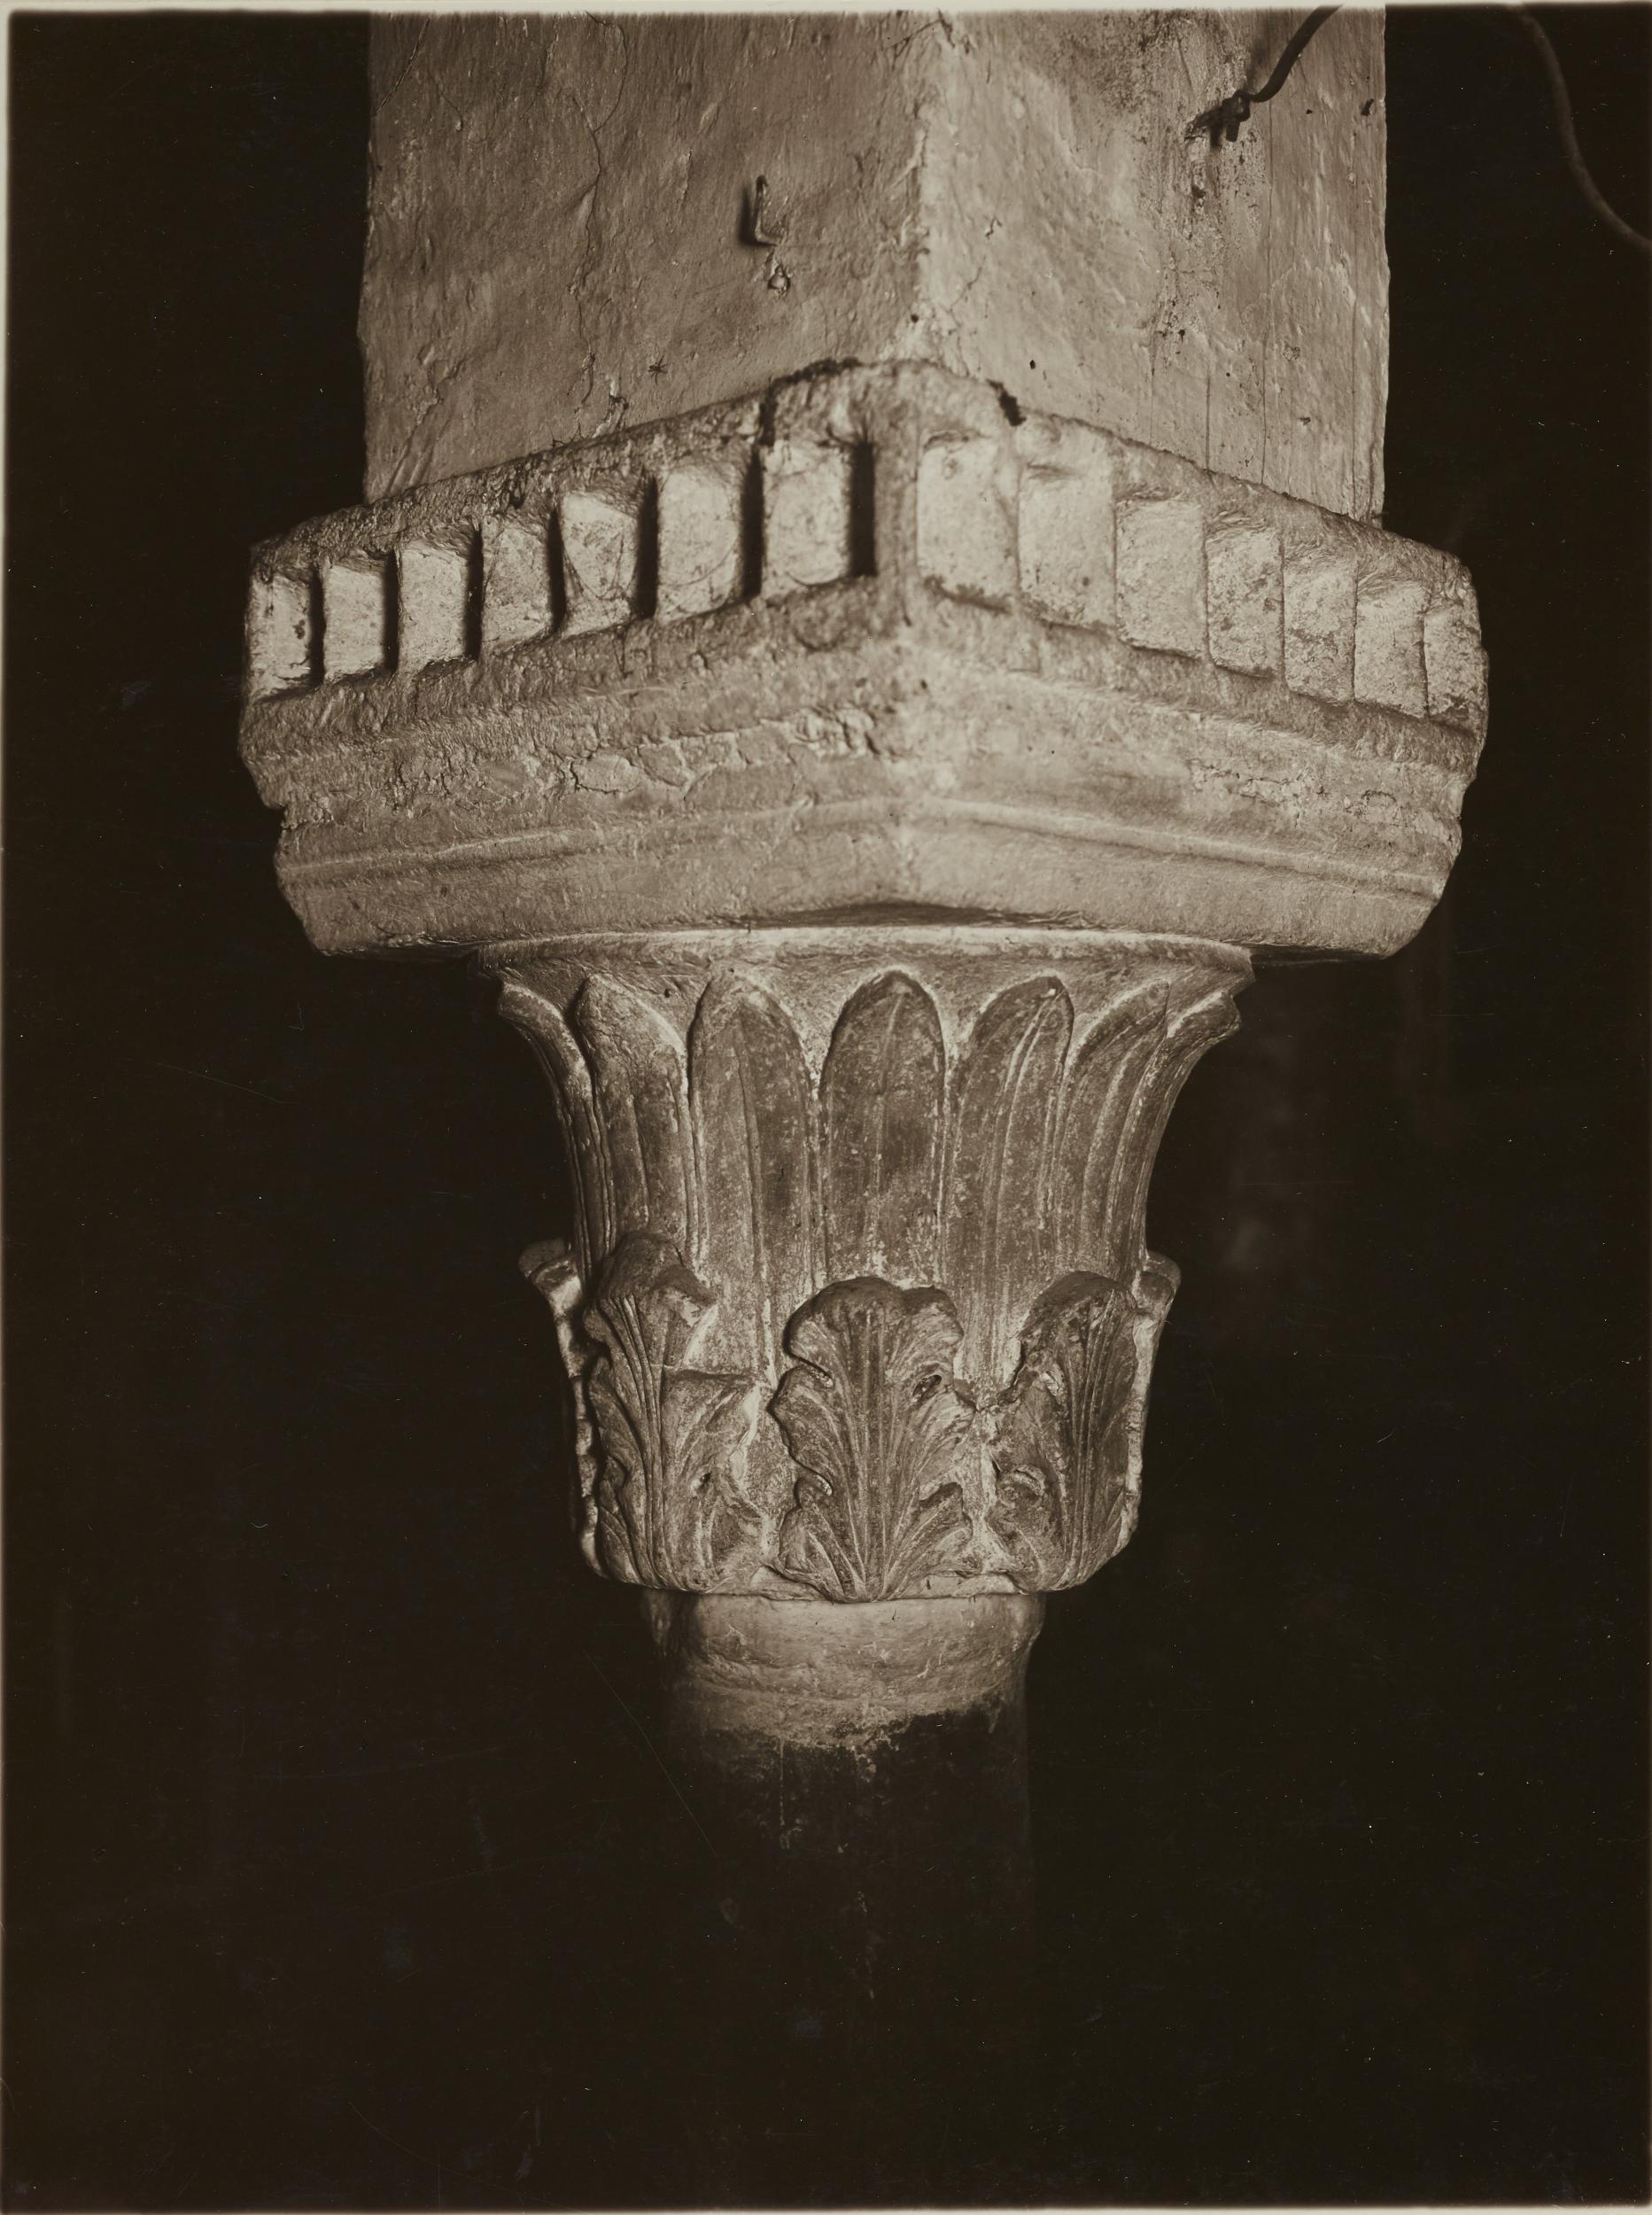 Antonio Ceccato, Bari - Chiesa di S. Gregorio, navata mediana, capitello con pulvino, 1926-1950, gelatina ai sali d'argento/carta, MPI136718